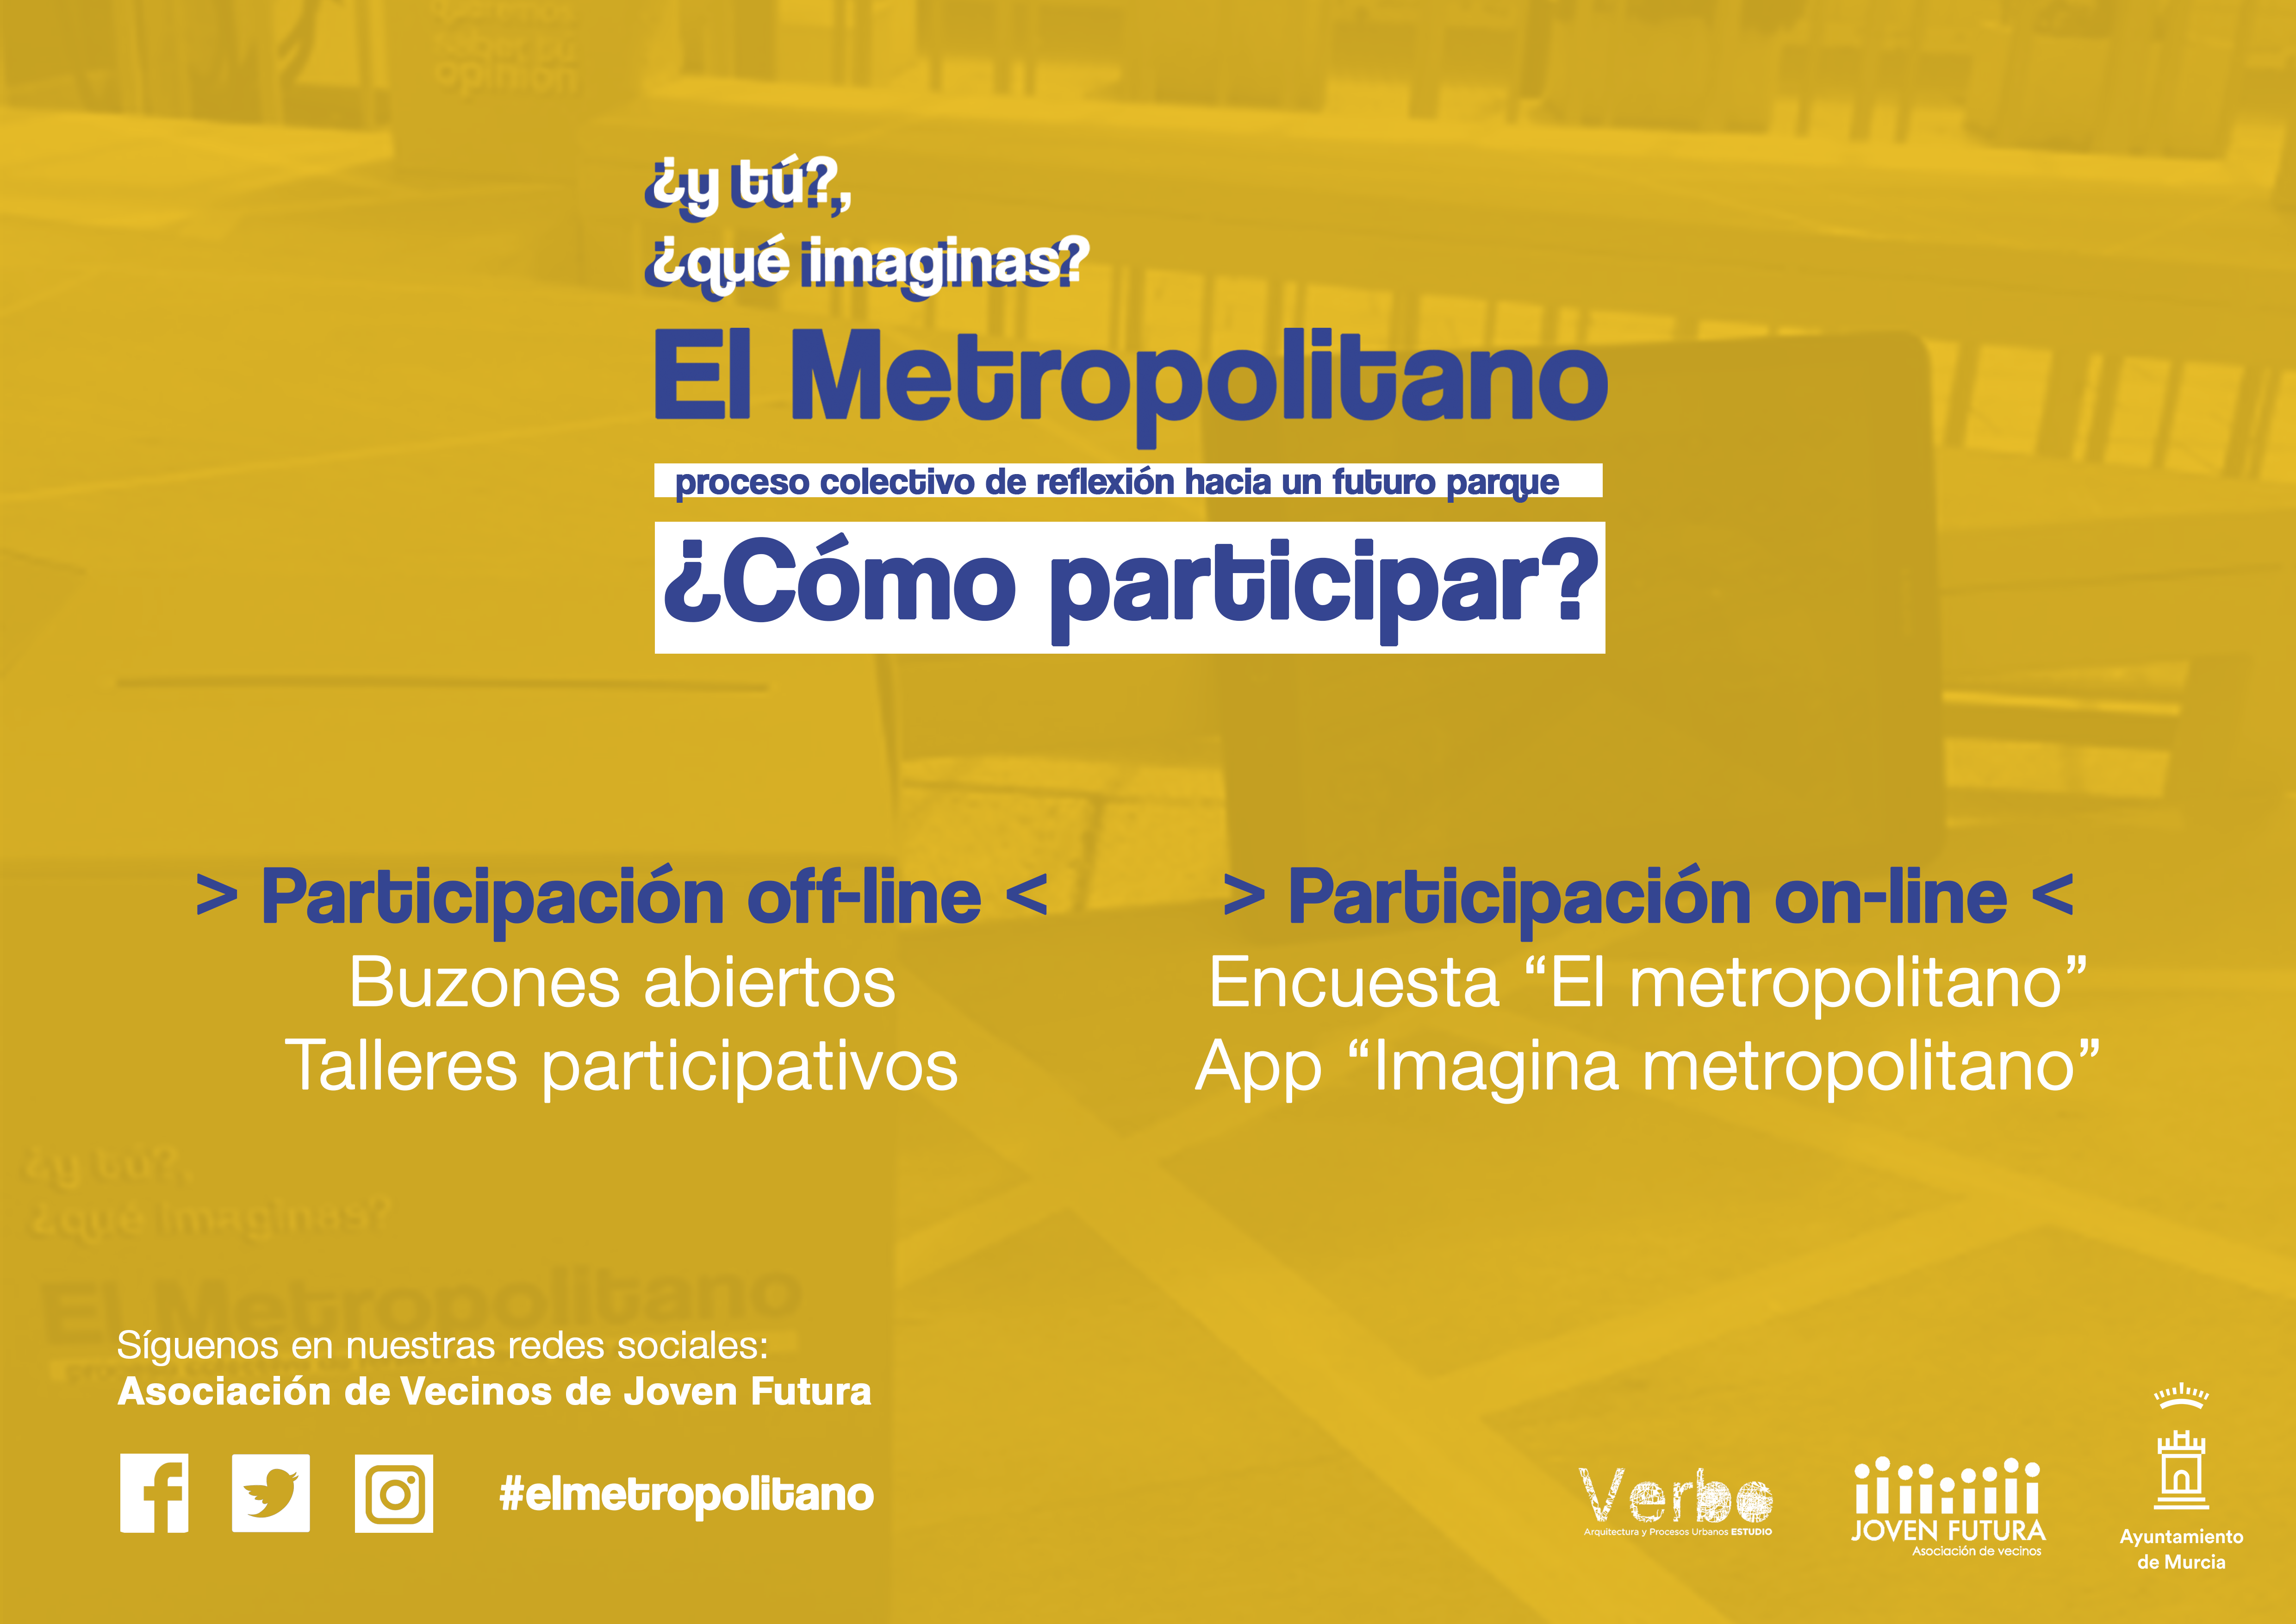 26-11-18 ¿Cómo participar? #ElMetropolitano